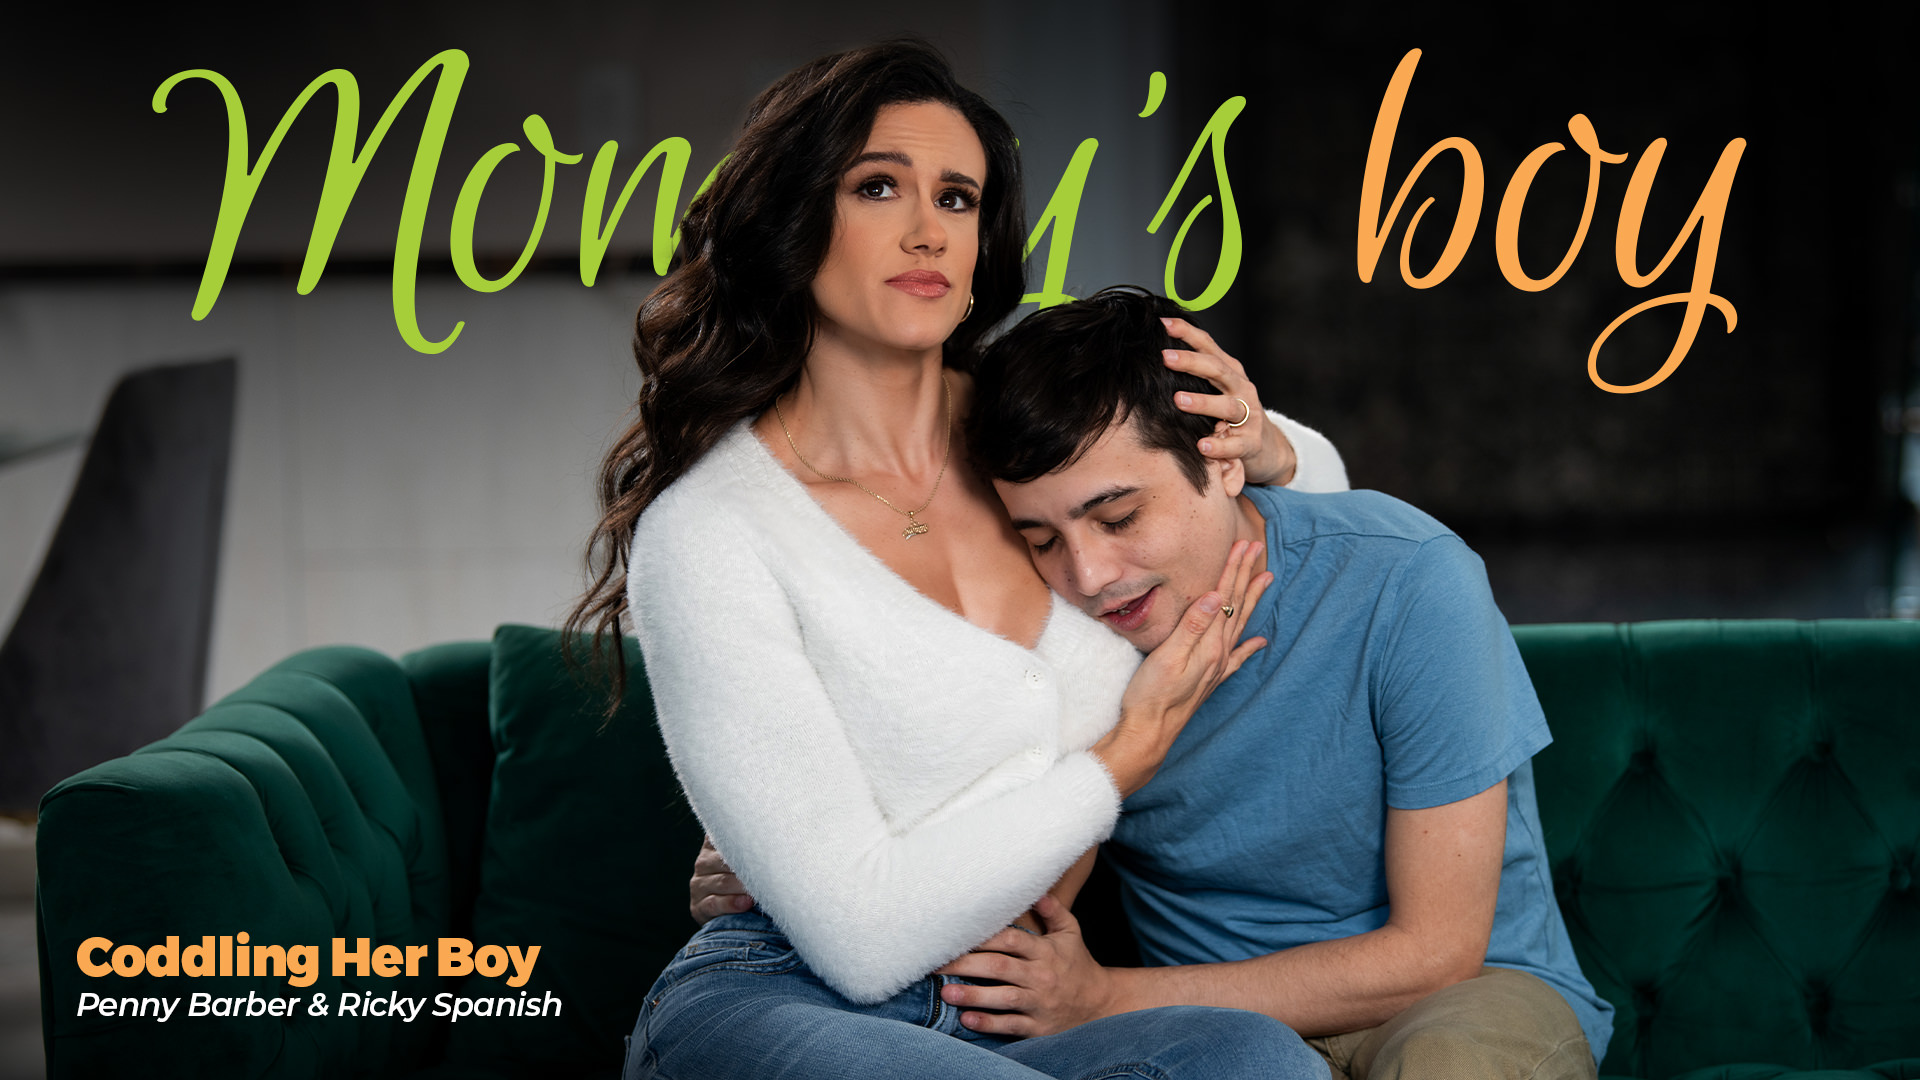 Ricky Spanish, Penny Barber “Coddling Her Boy” MommysBoy